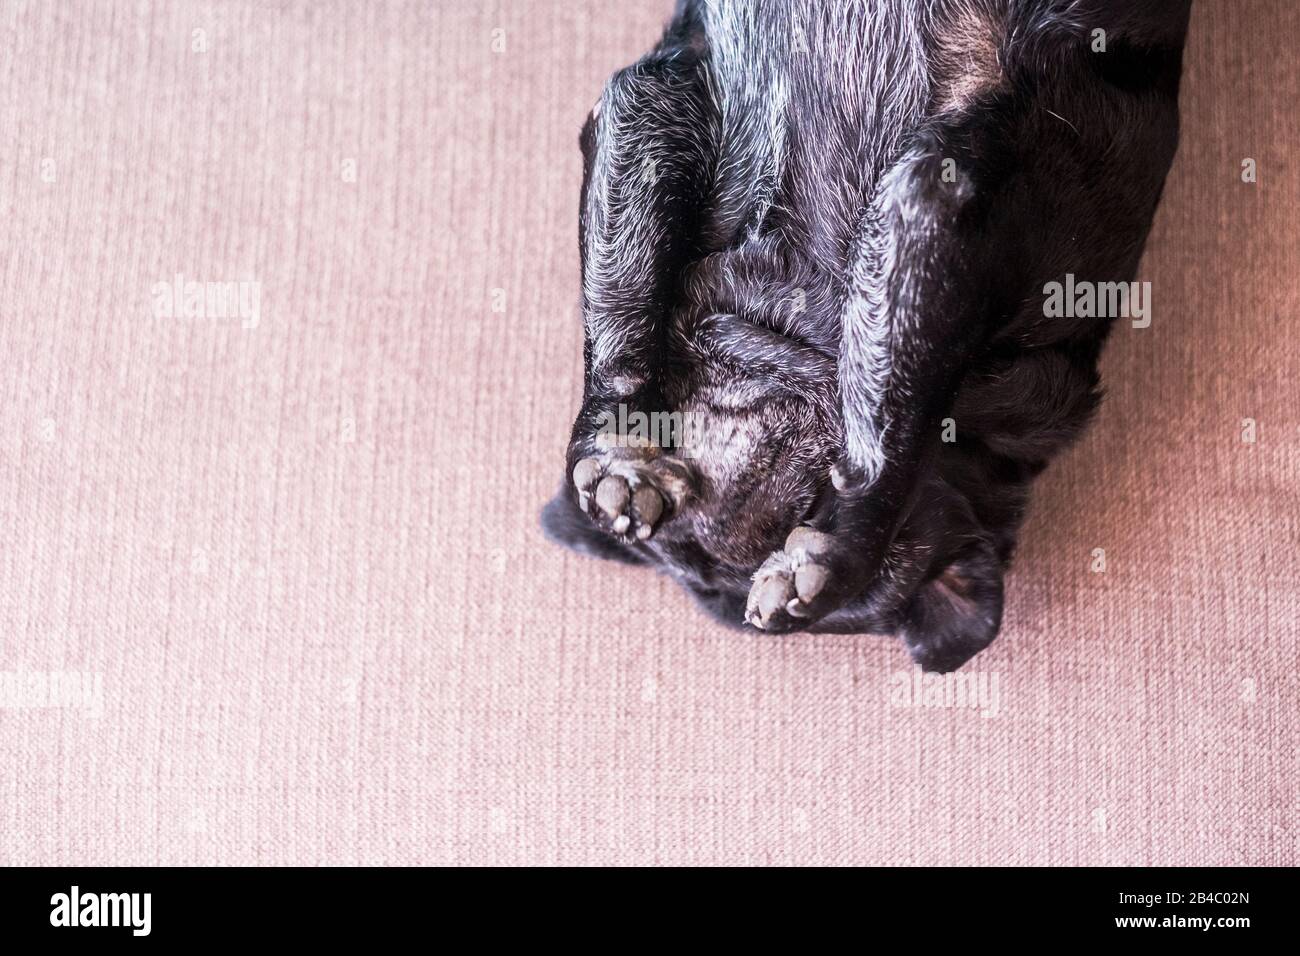 Lustige süße Hund Mops verrückt spielen allein auf dem Sofa zu Hause gehen - schöne Welpen pet in Rückwärtsstellung Spaß haben - Inland Tier Hintergrund Konzept Stockfoto